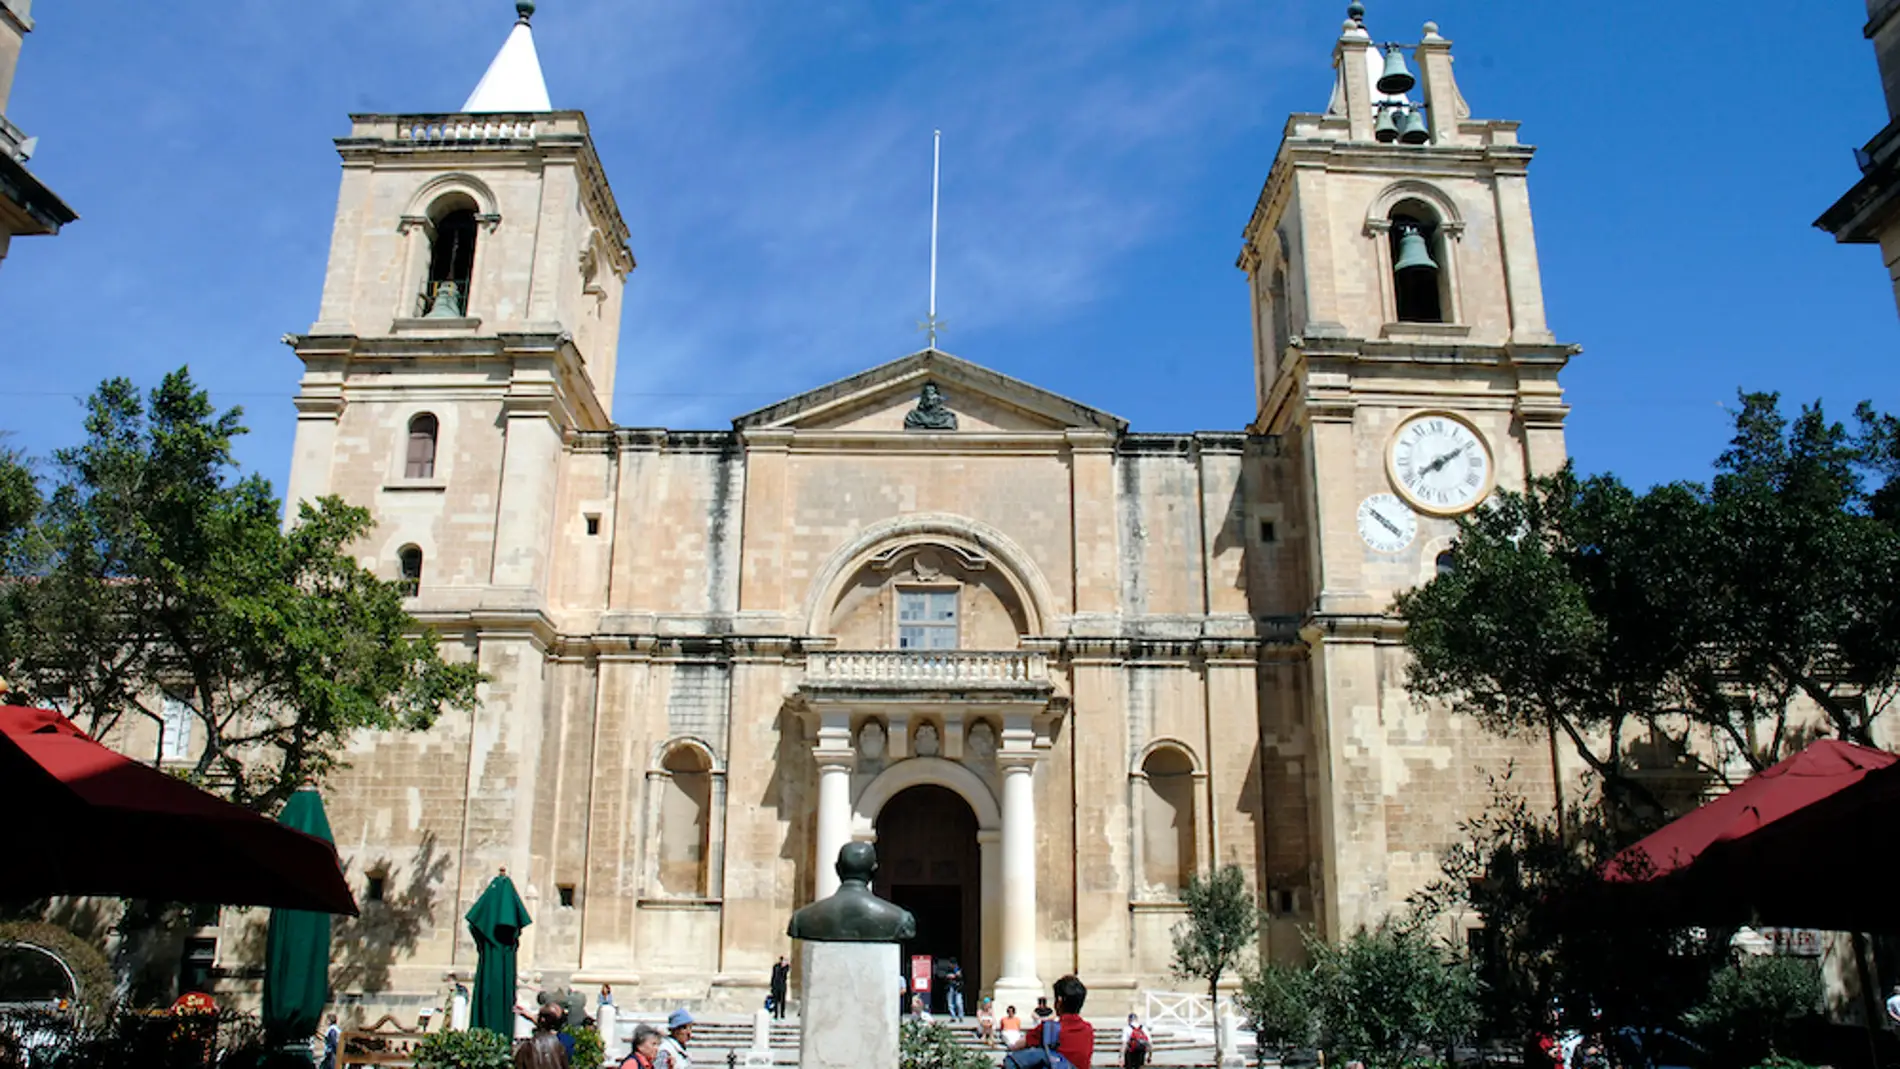 Los secretos que encierra la Concatedral de San Juan en Malta. ¿Será Caravaggio uno de ellos?